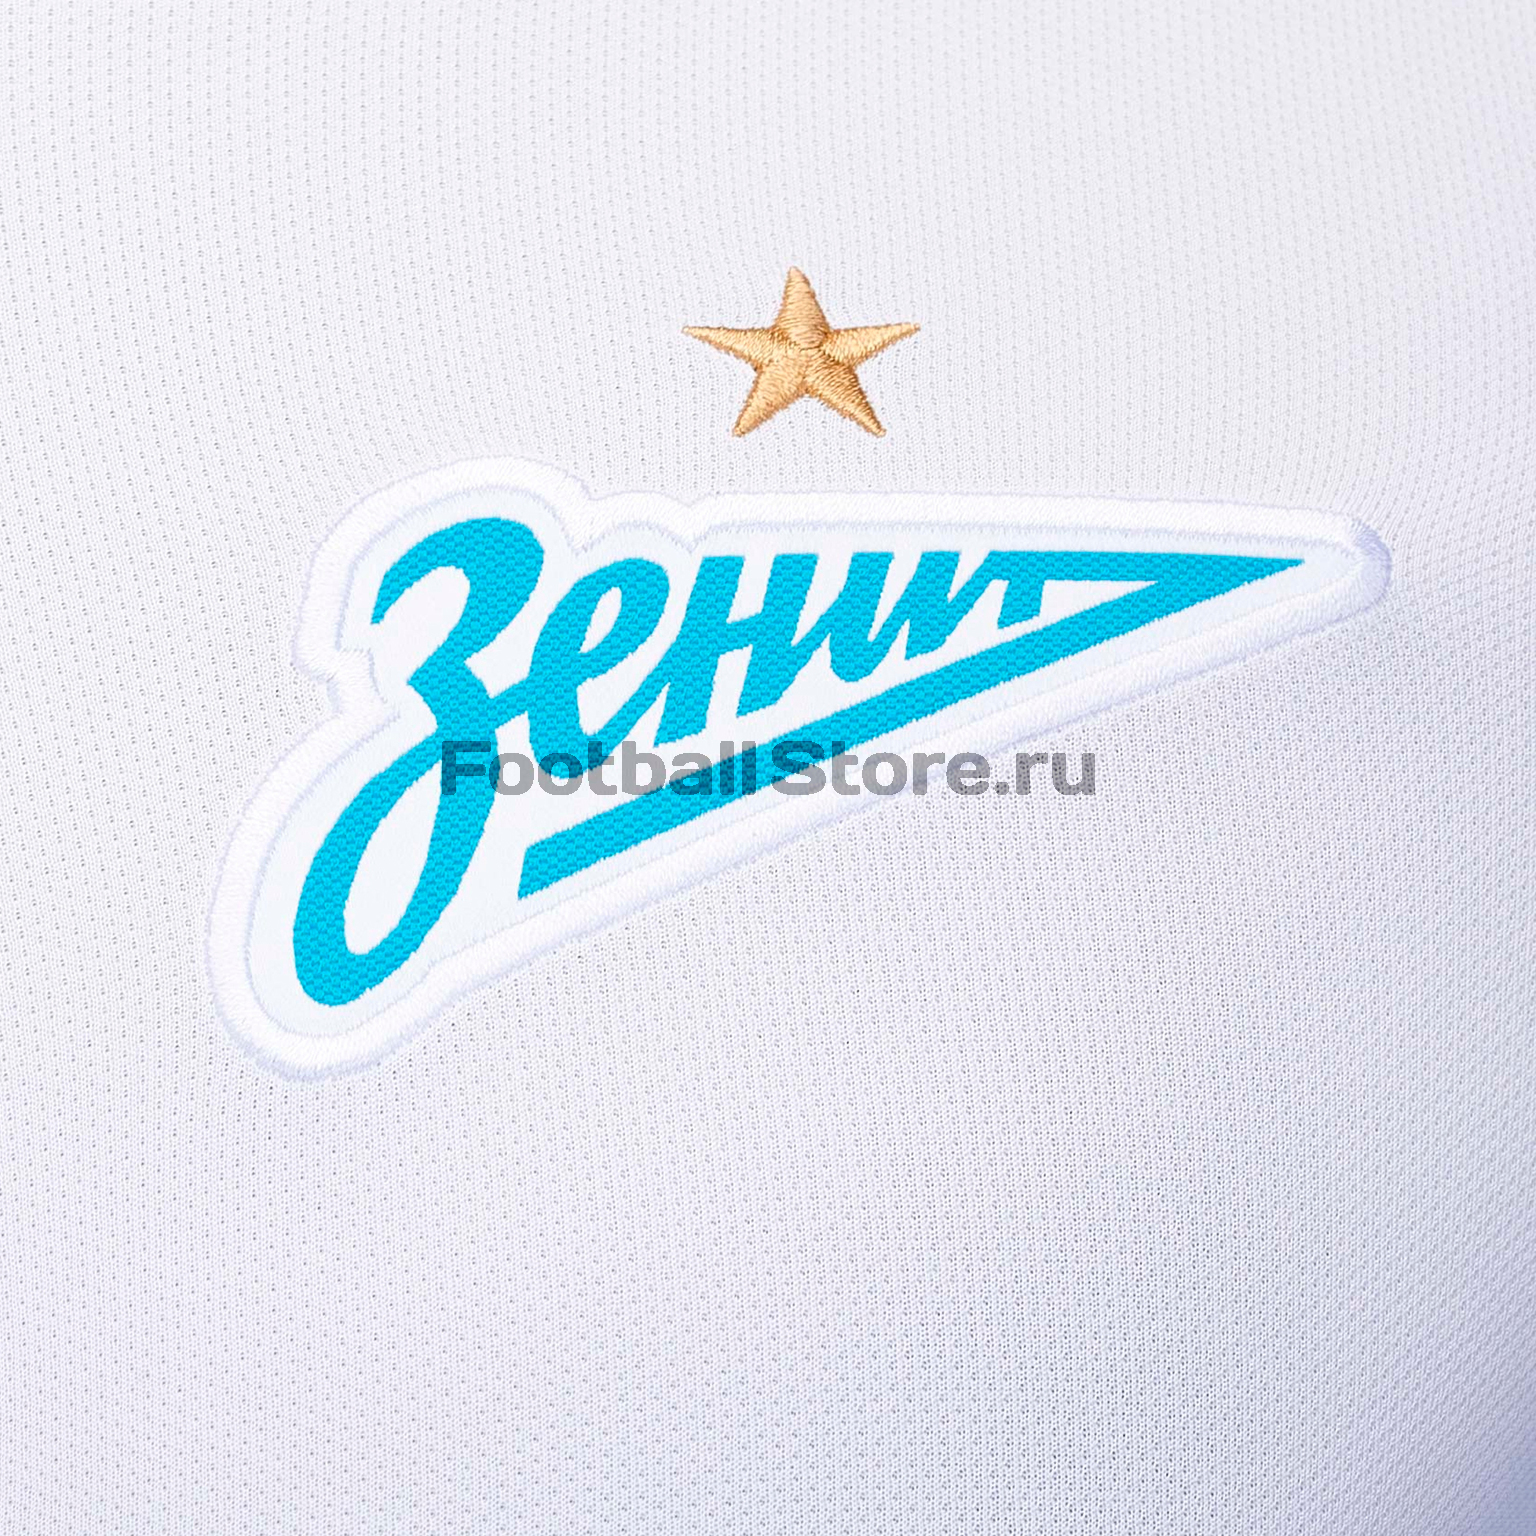 Оригинальная выездная футболка Nike Zenit сезон 2018/19